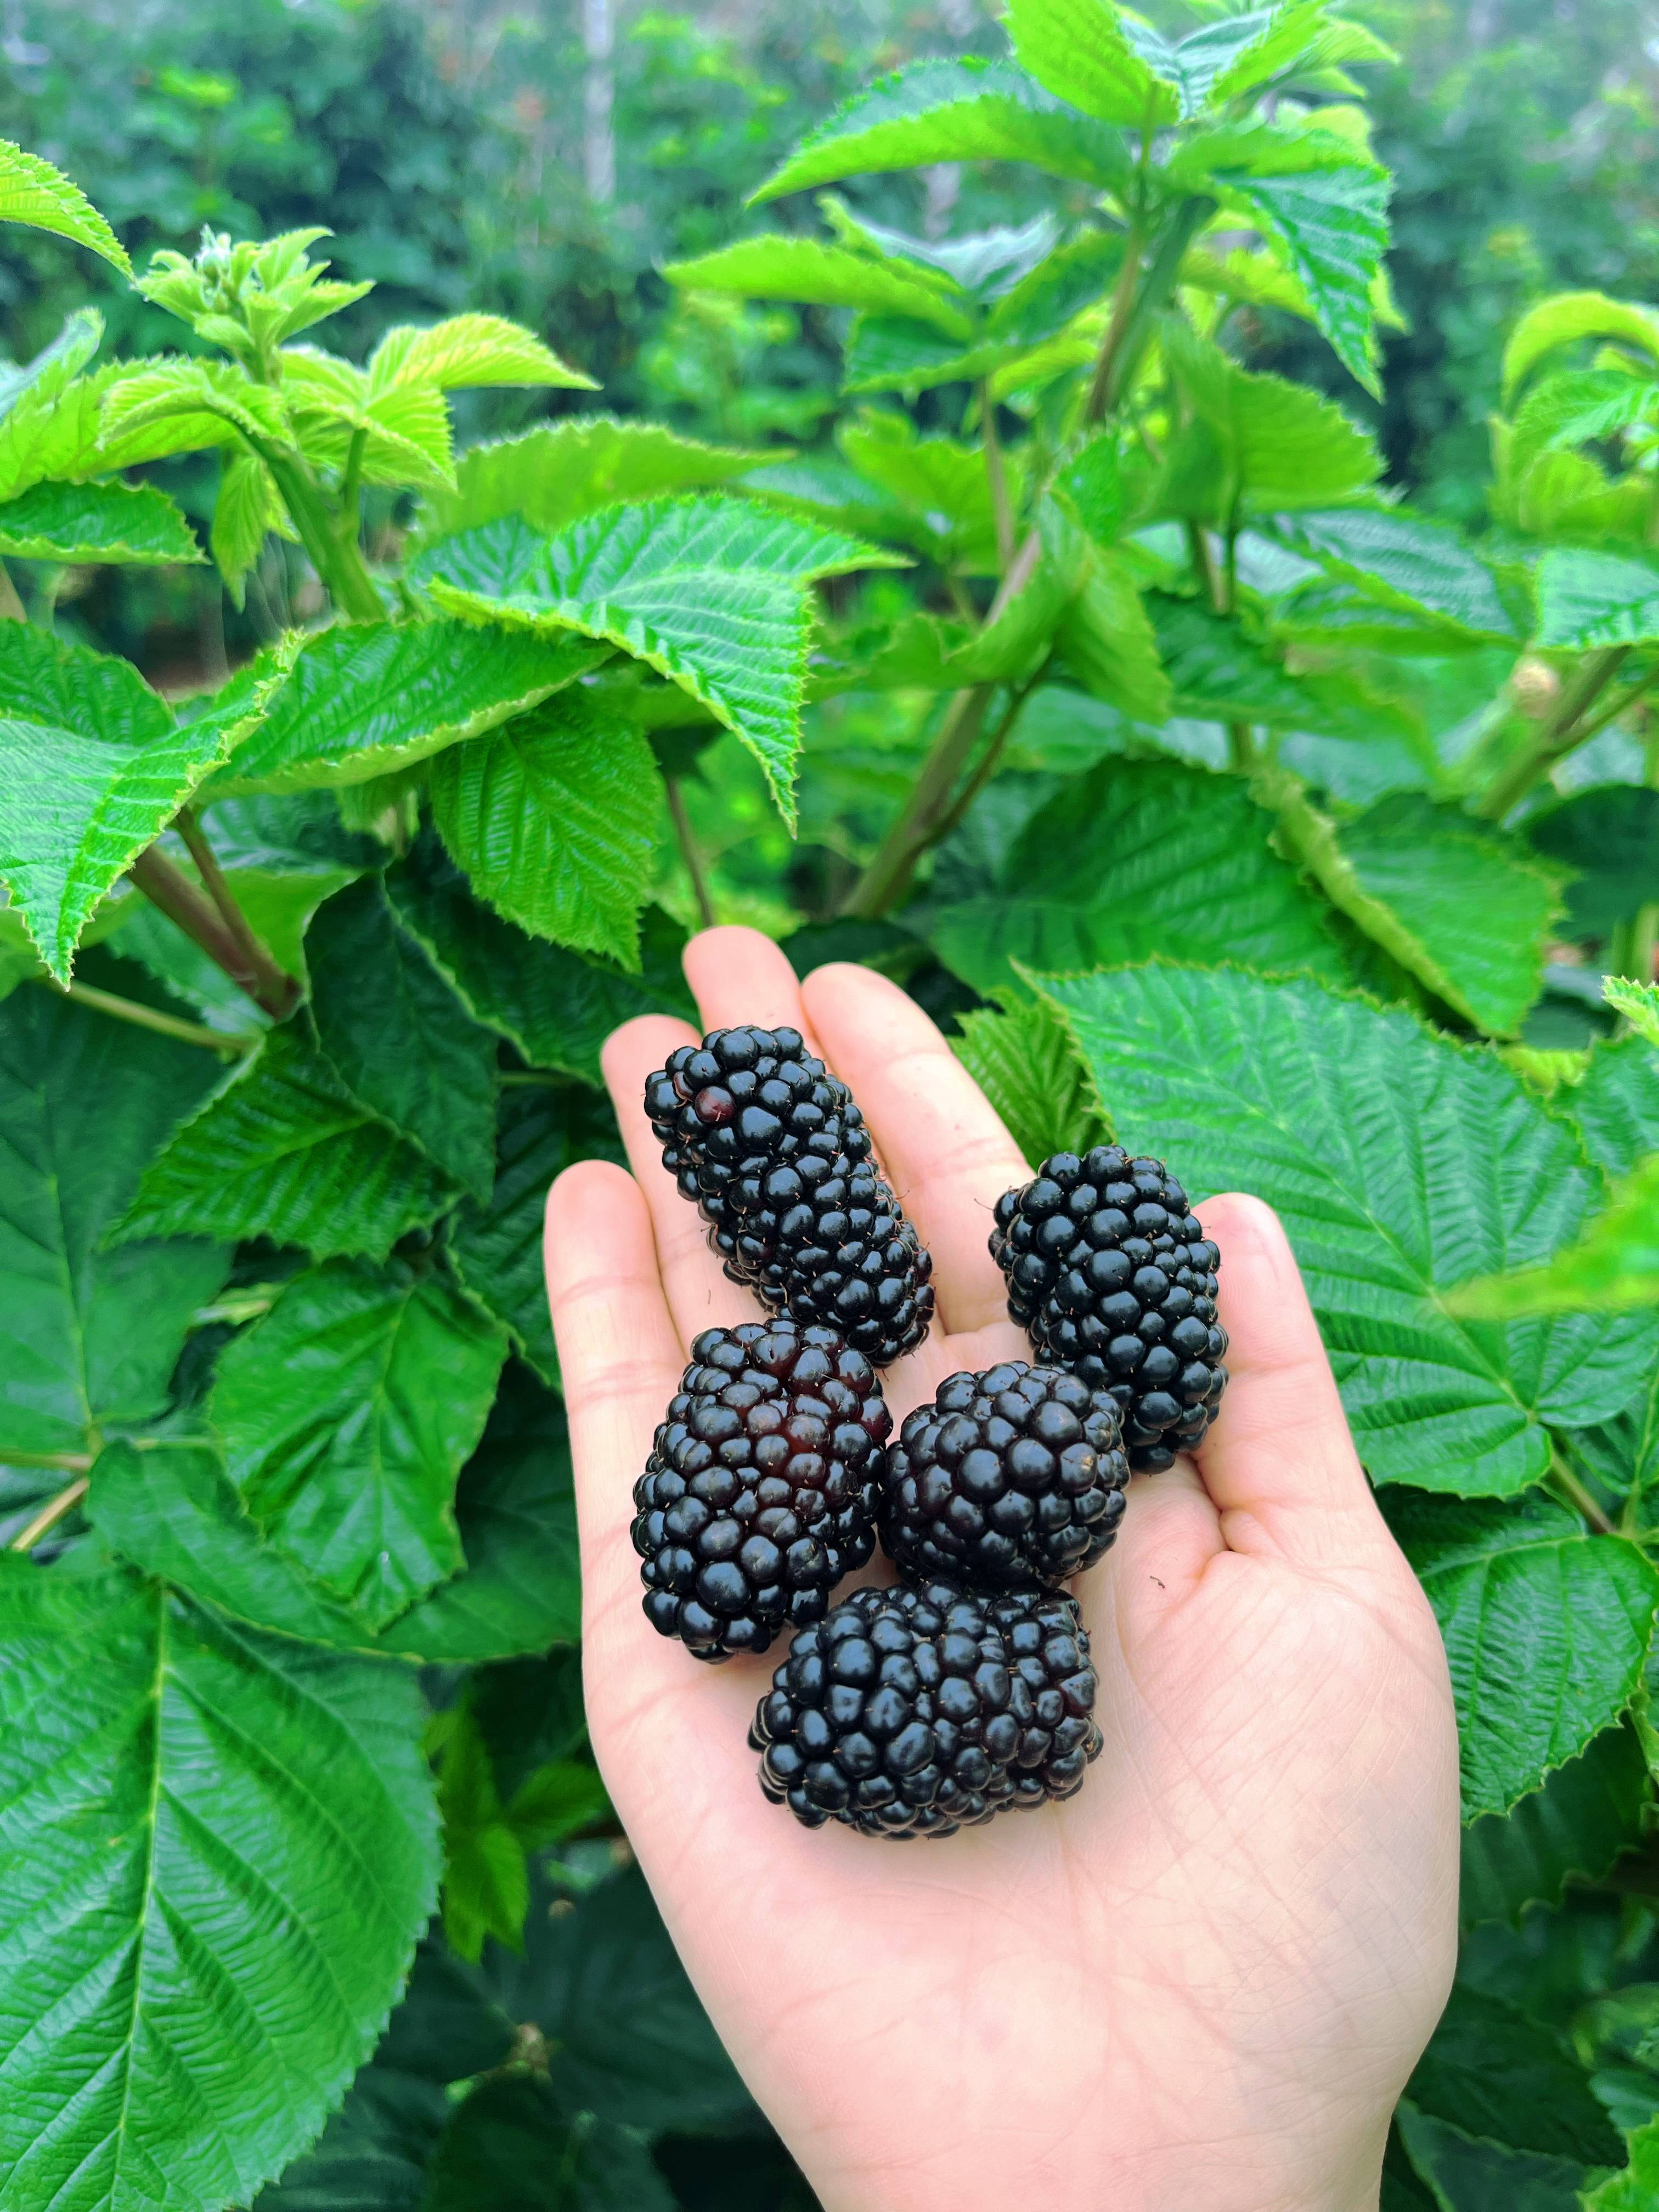 黑莓:天然的营养宝库,食养的好选择!